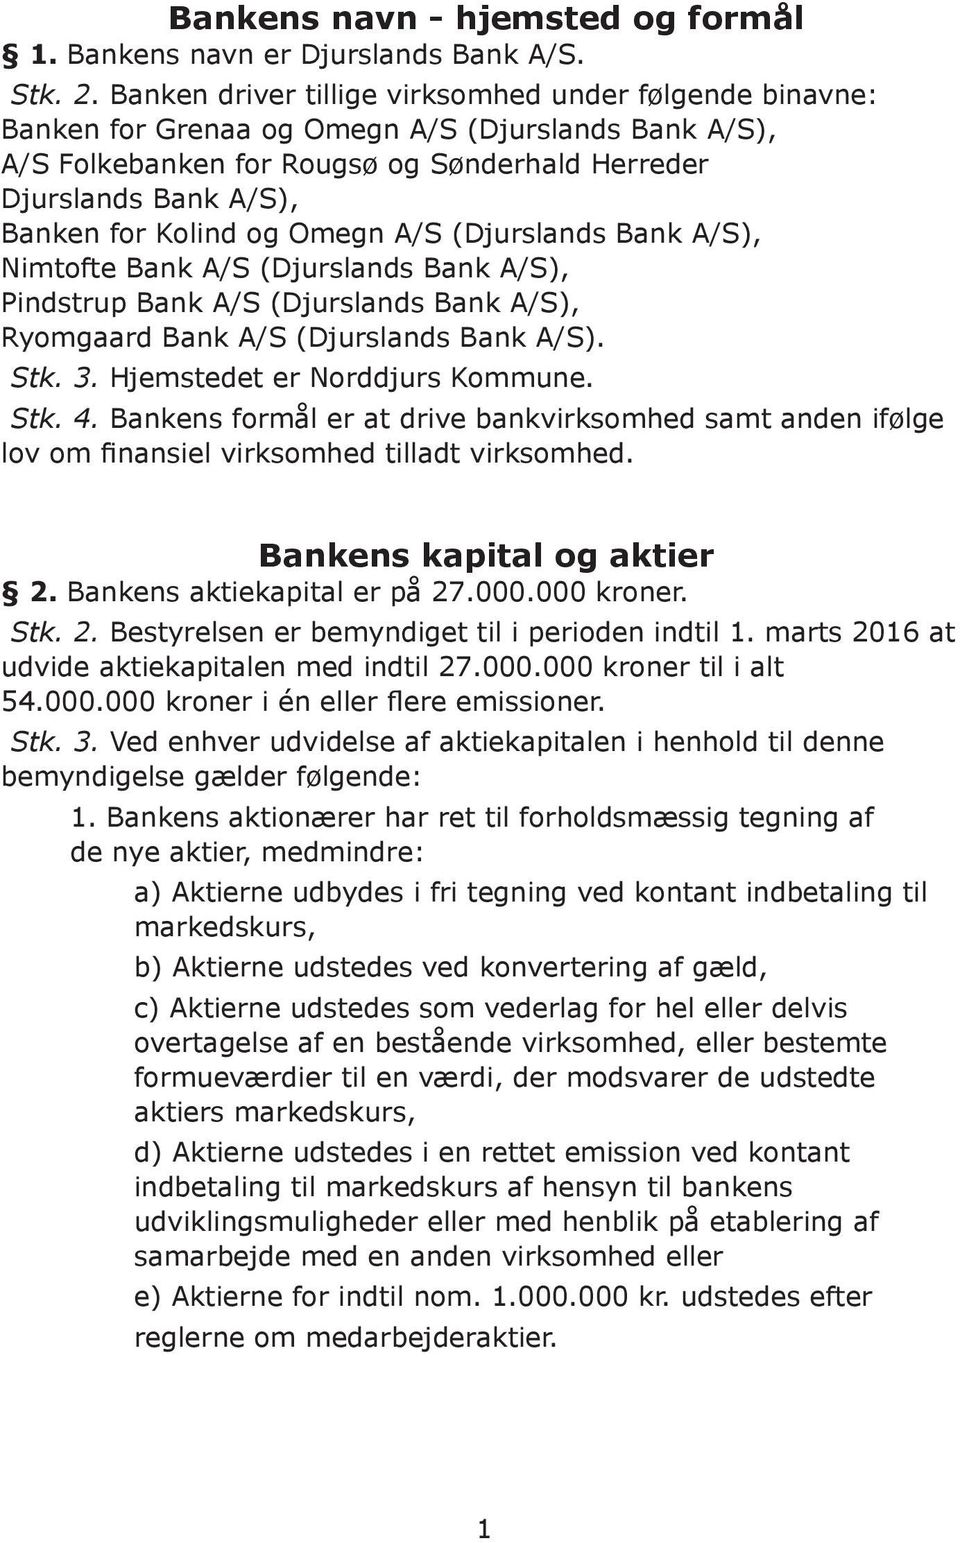 Kolind og Omegn A/S (Djurslands Bank A/S), Nimtofte Bank A/S (Djurslands Bank A/S), Pindstrup Bank A/S (Djurslands Bank A/S), Ryomgaard Bank A/S (Djurslands Bank A/S). Stk. 3.